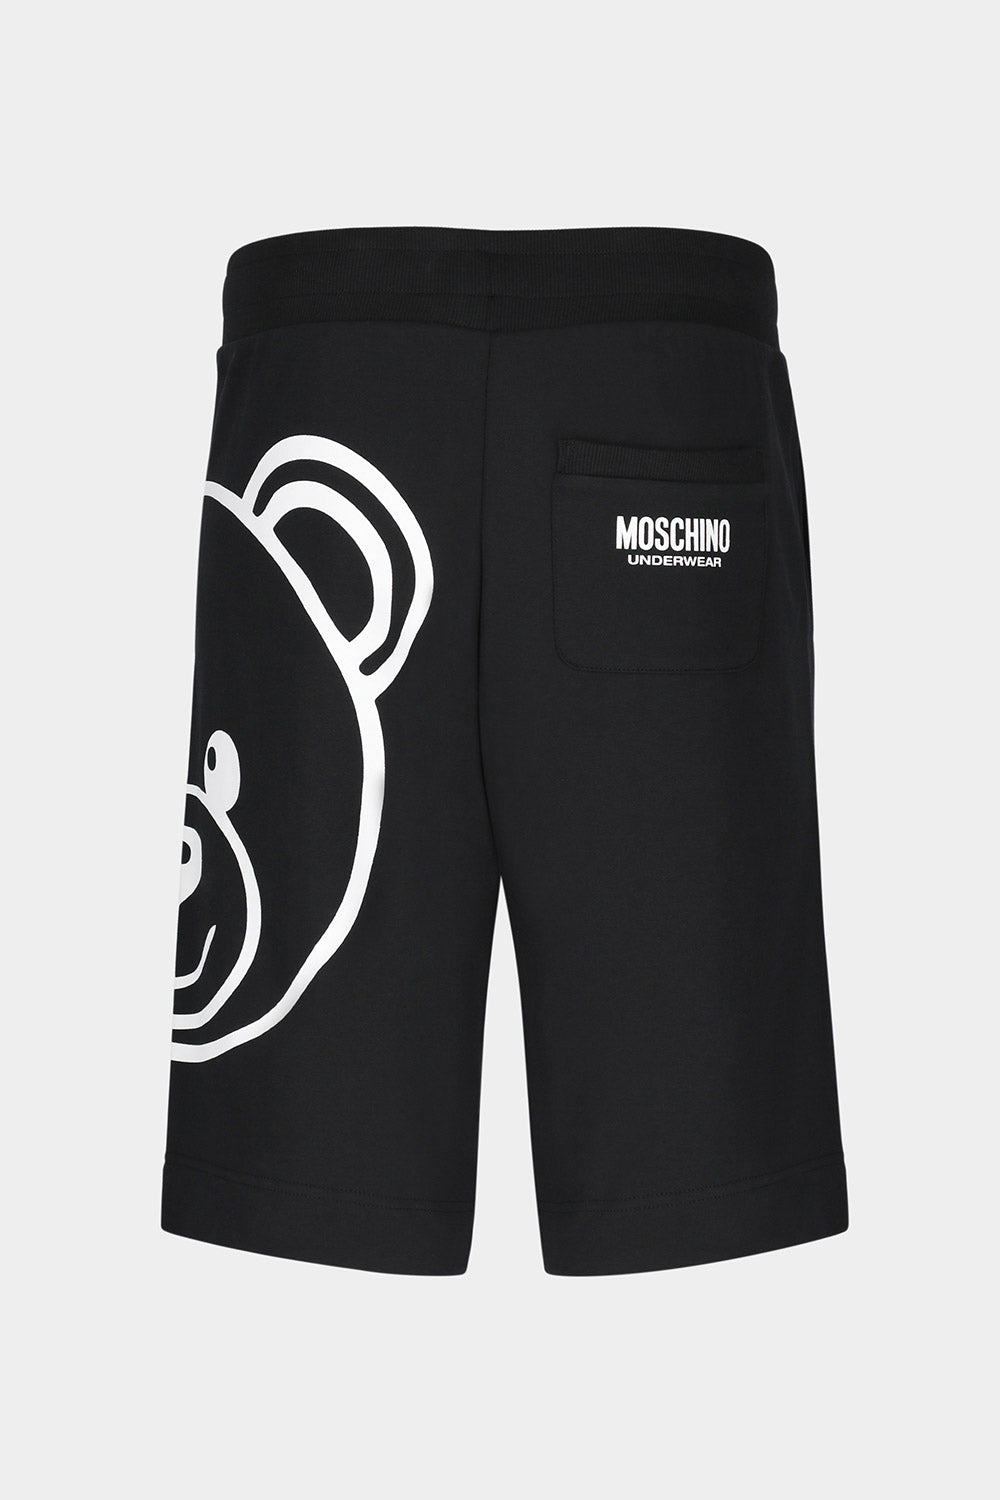 מכנסי ברמודה לגברים דובי ענק MOSCHINO Vendome online | ונדום .